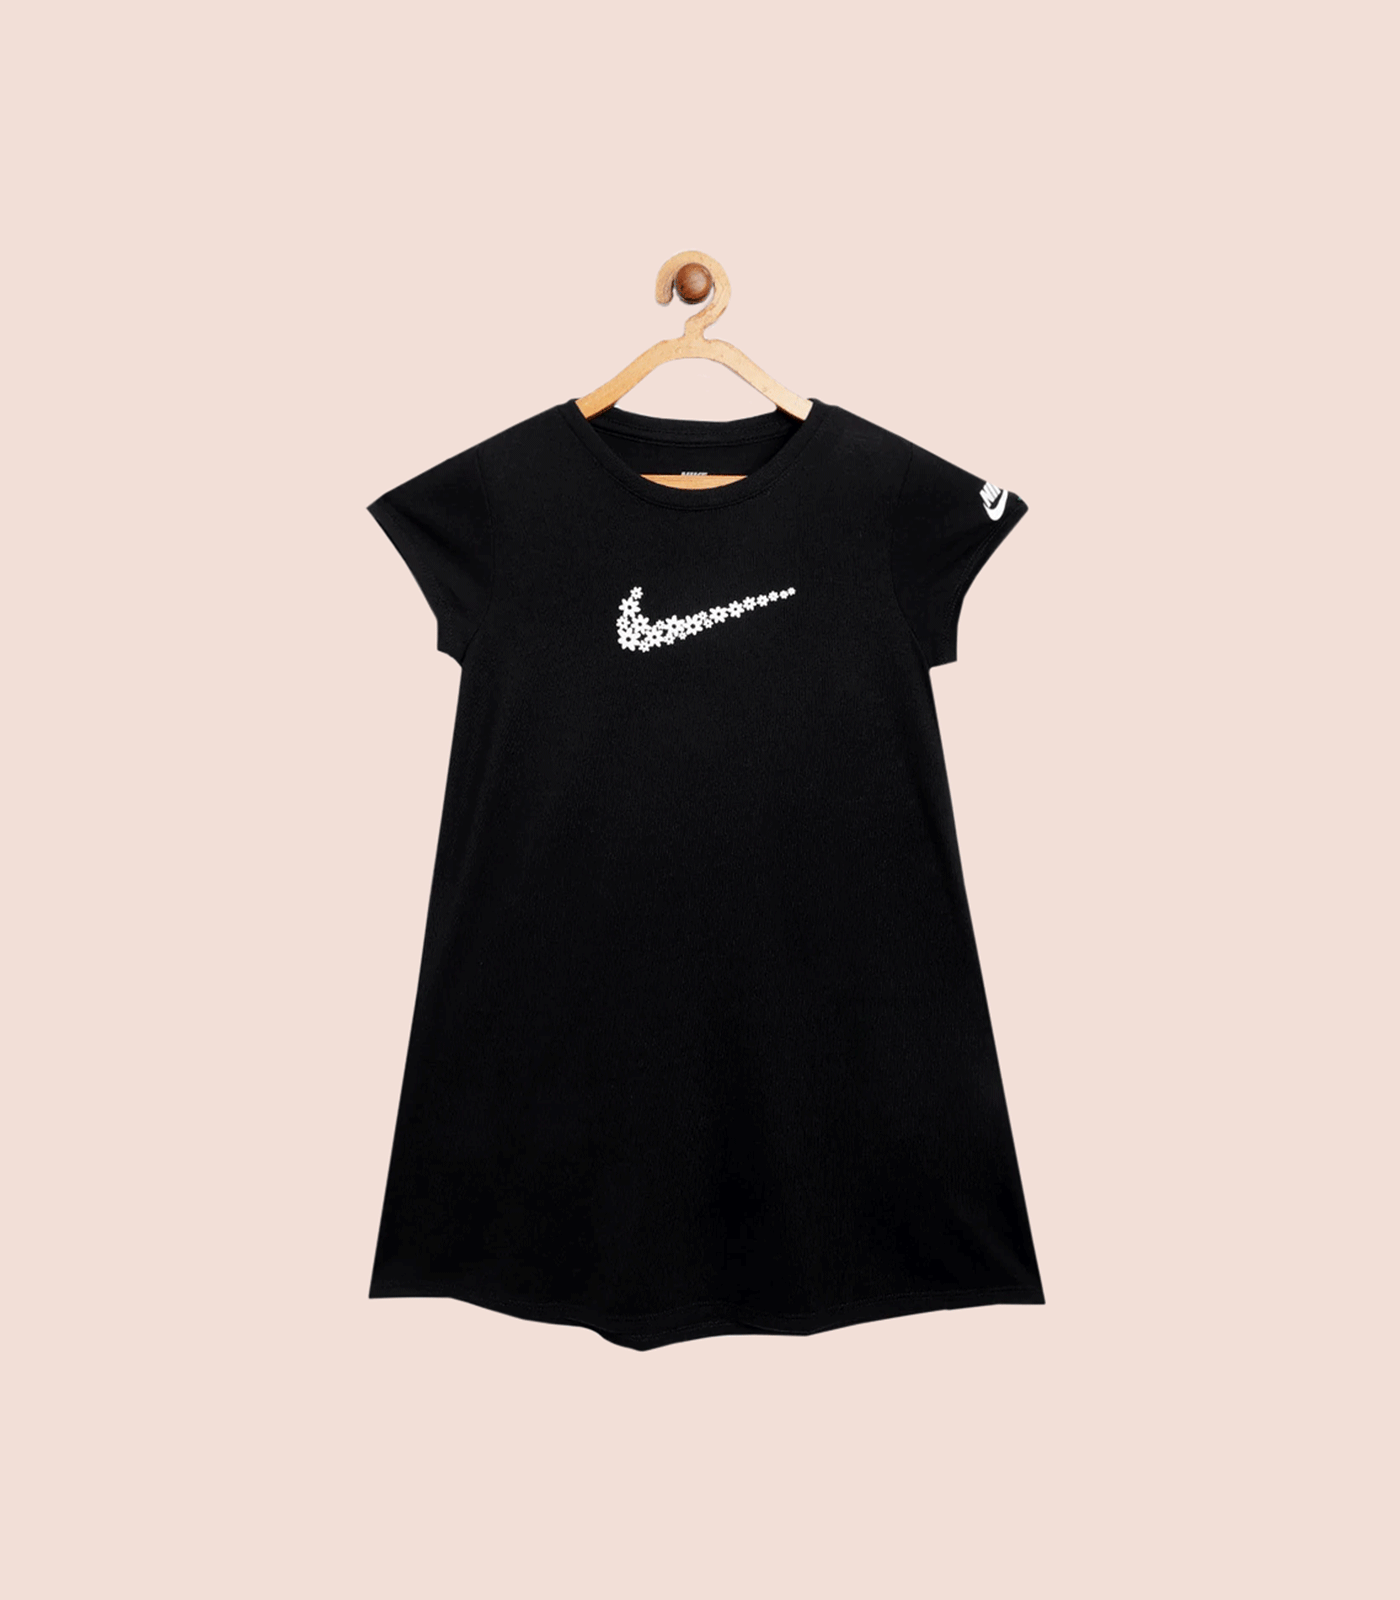 Nike girls dress (kidsup)